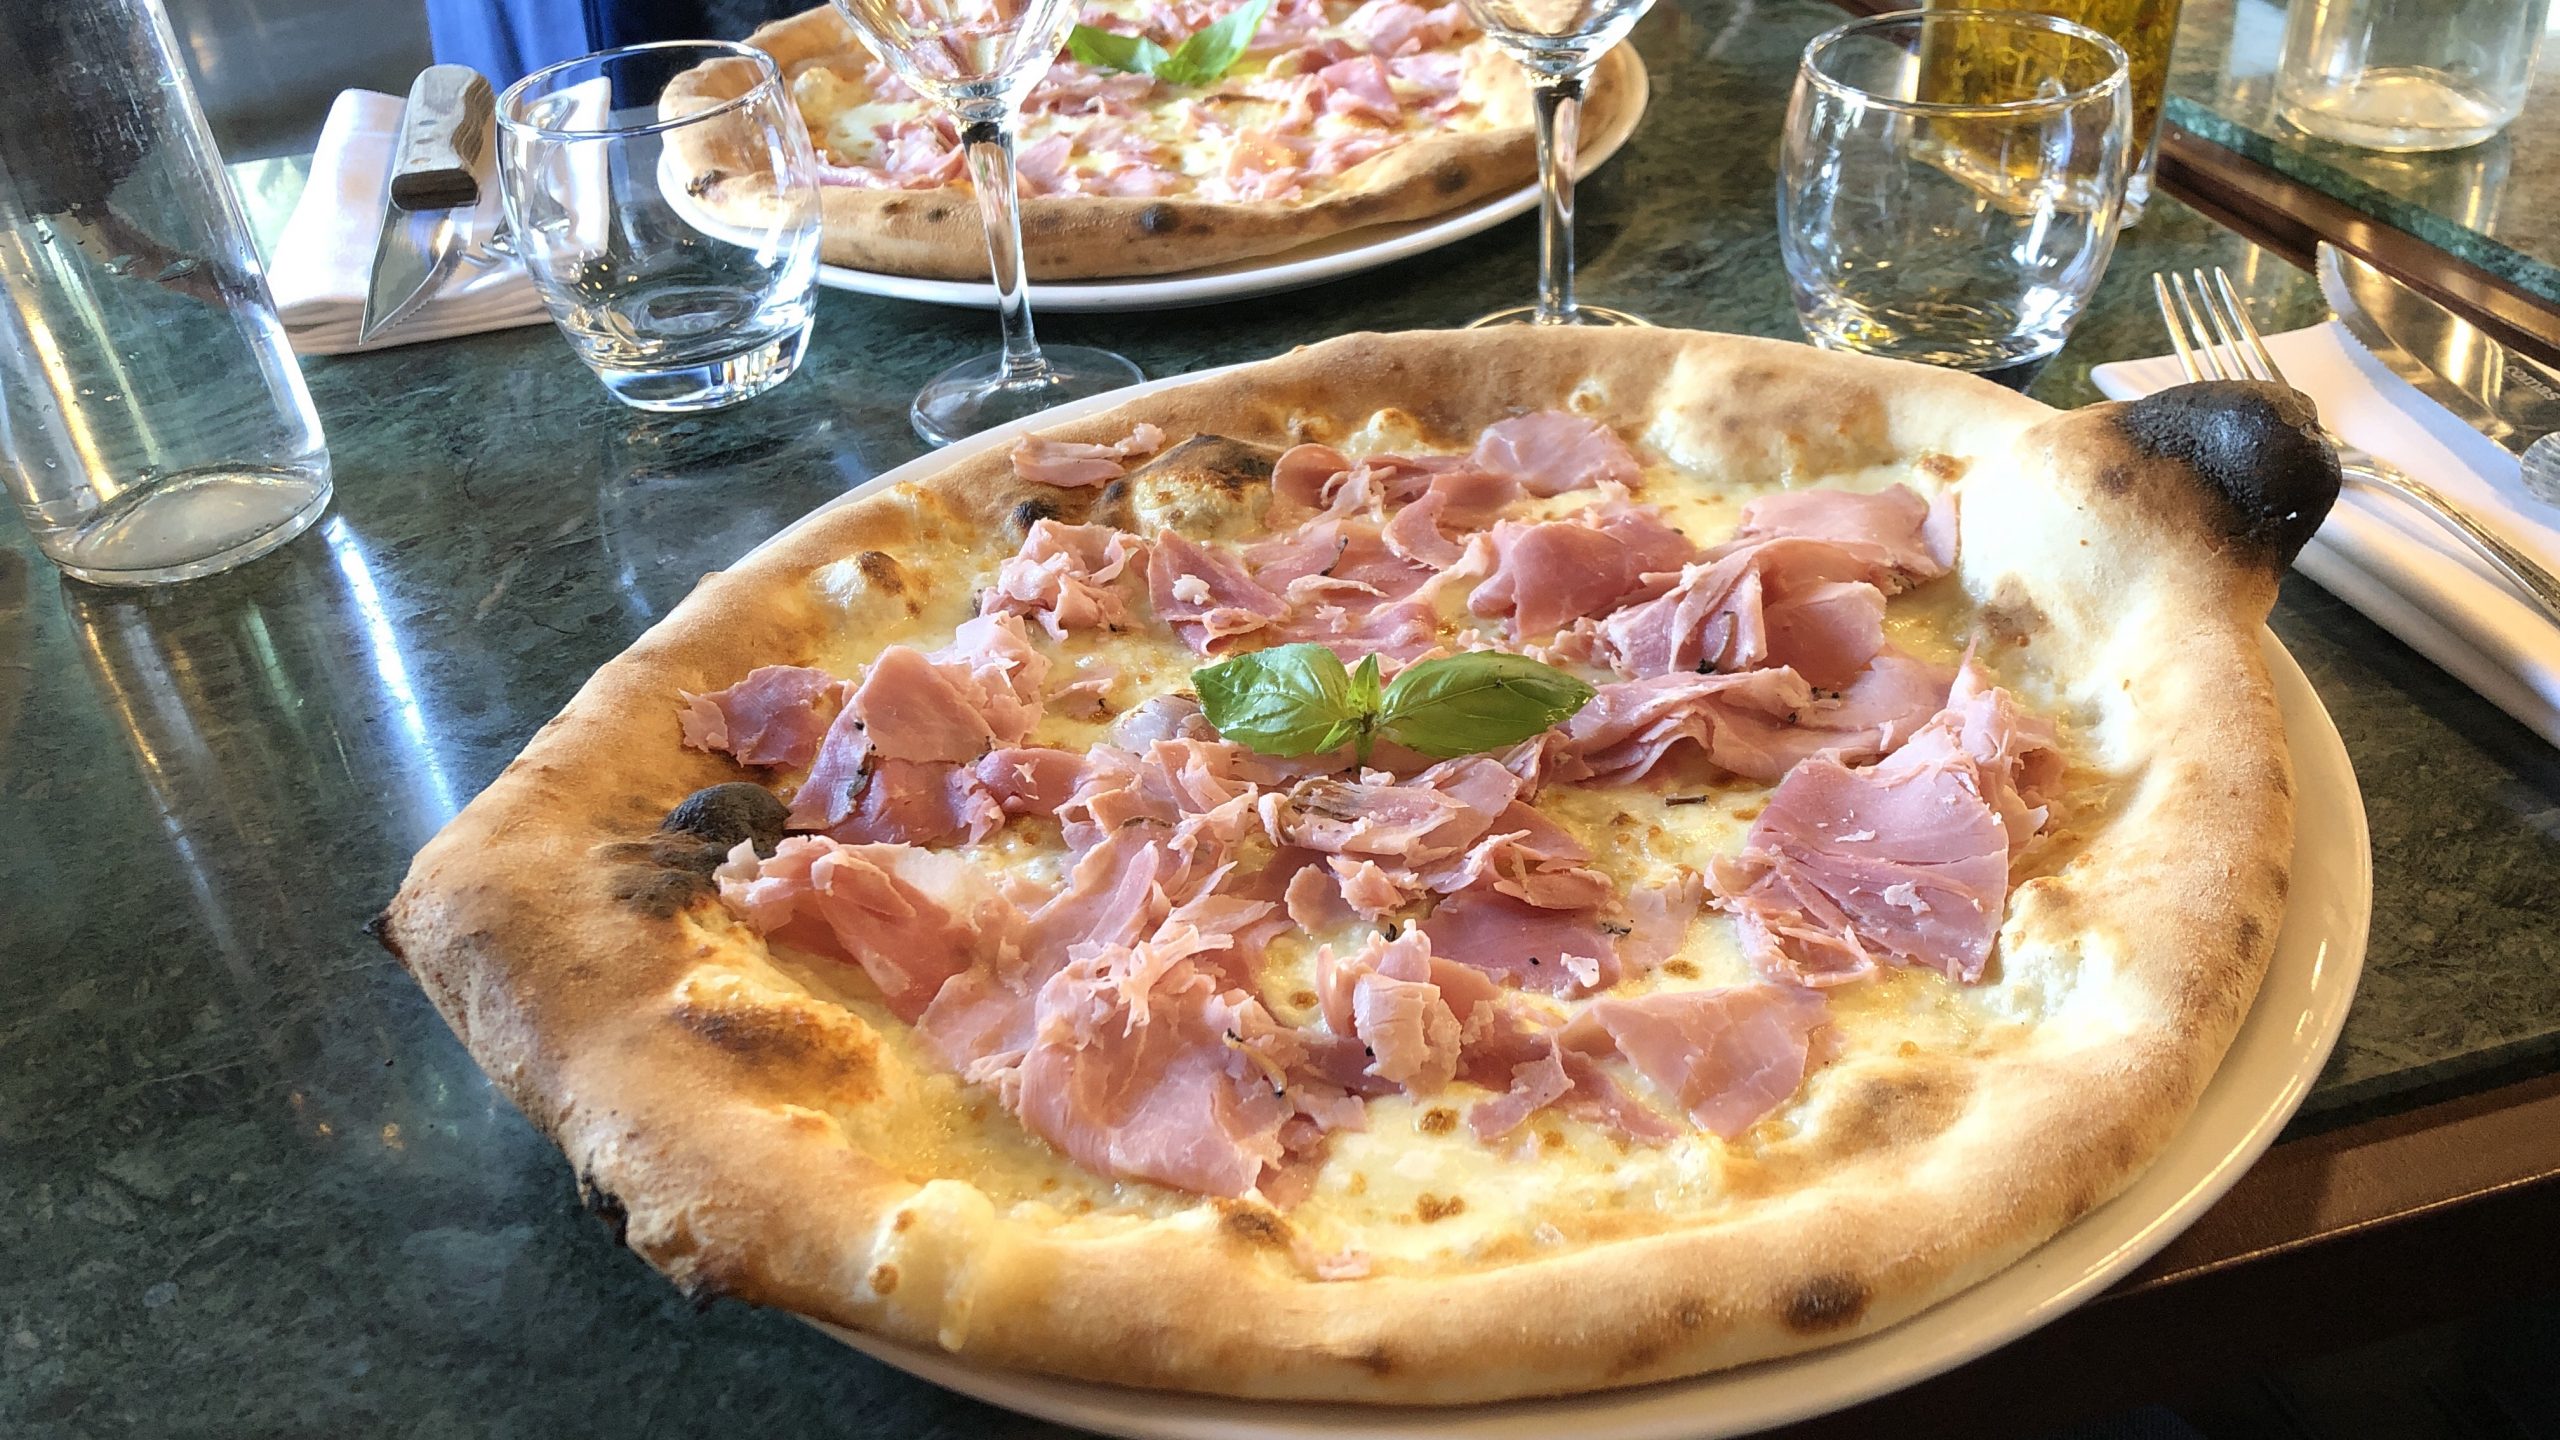 Fratelli Ristorante pizza Bianca d'Alba Lyon